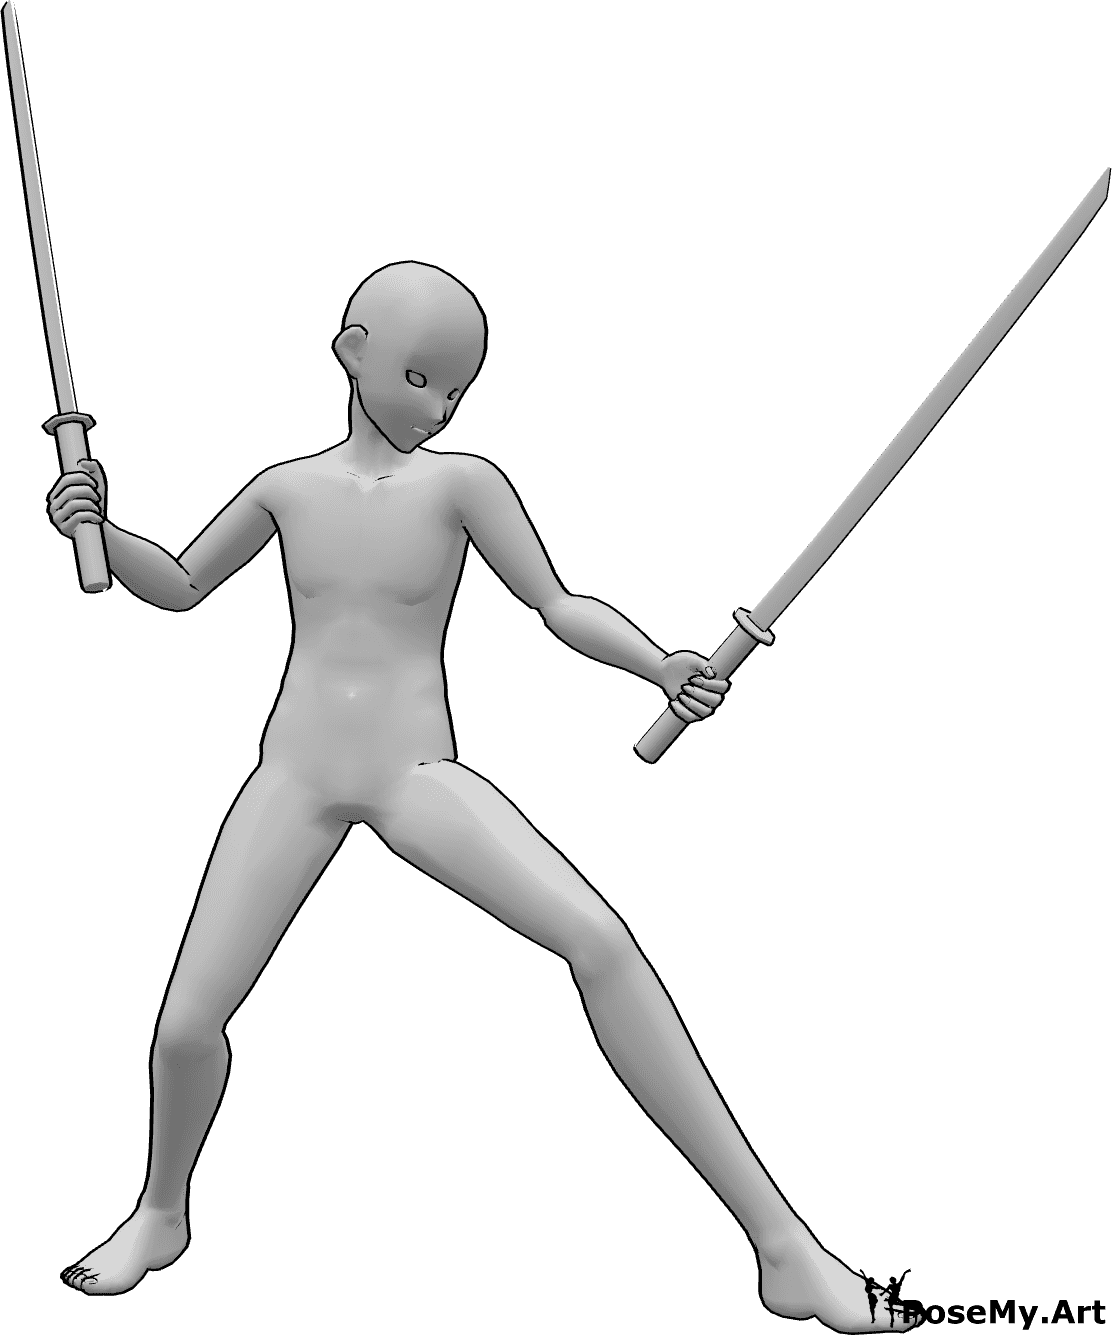 Référence des poses- Anime homme ninja pose - L'homme animé tient des katanas à deux mains, regarde vers la gauche et est prêt à se battre.